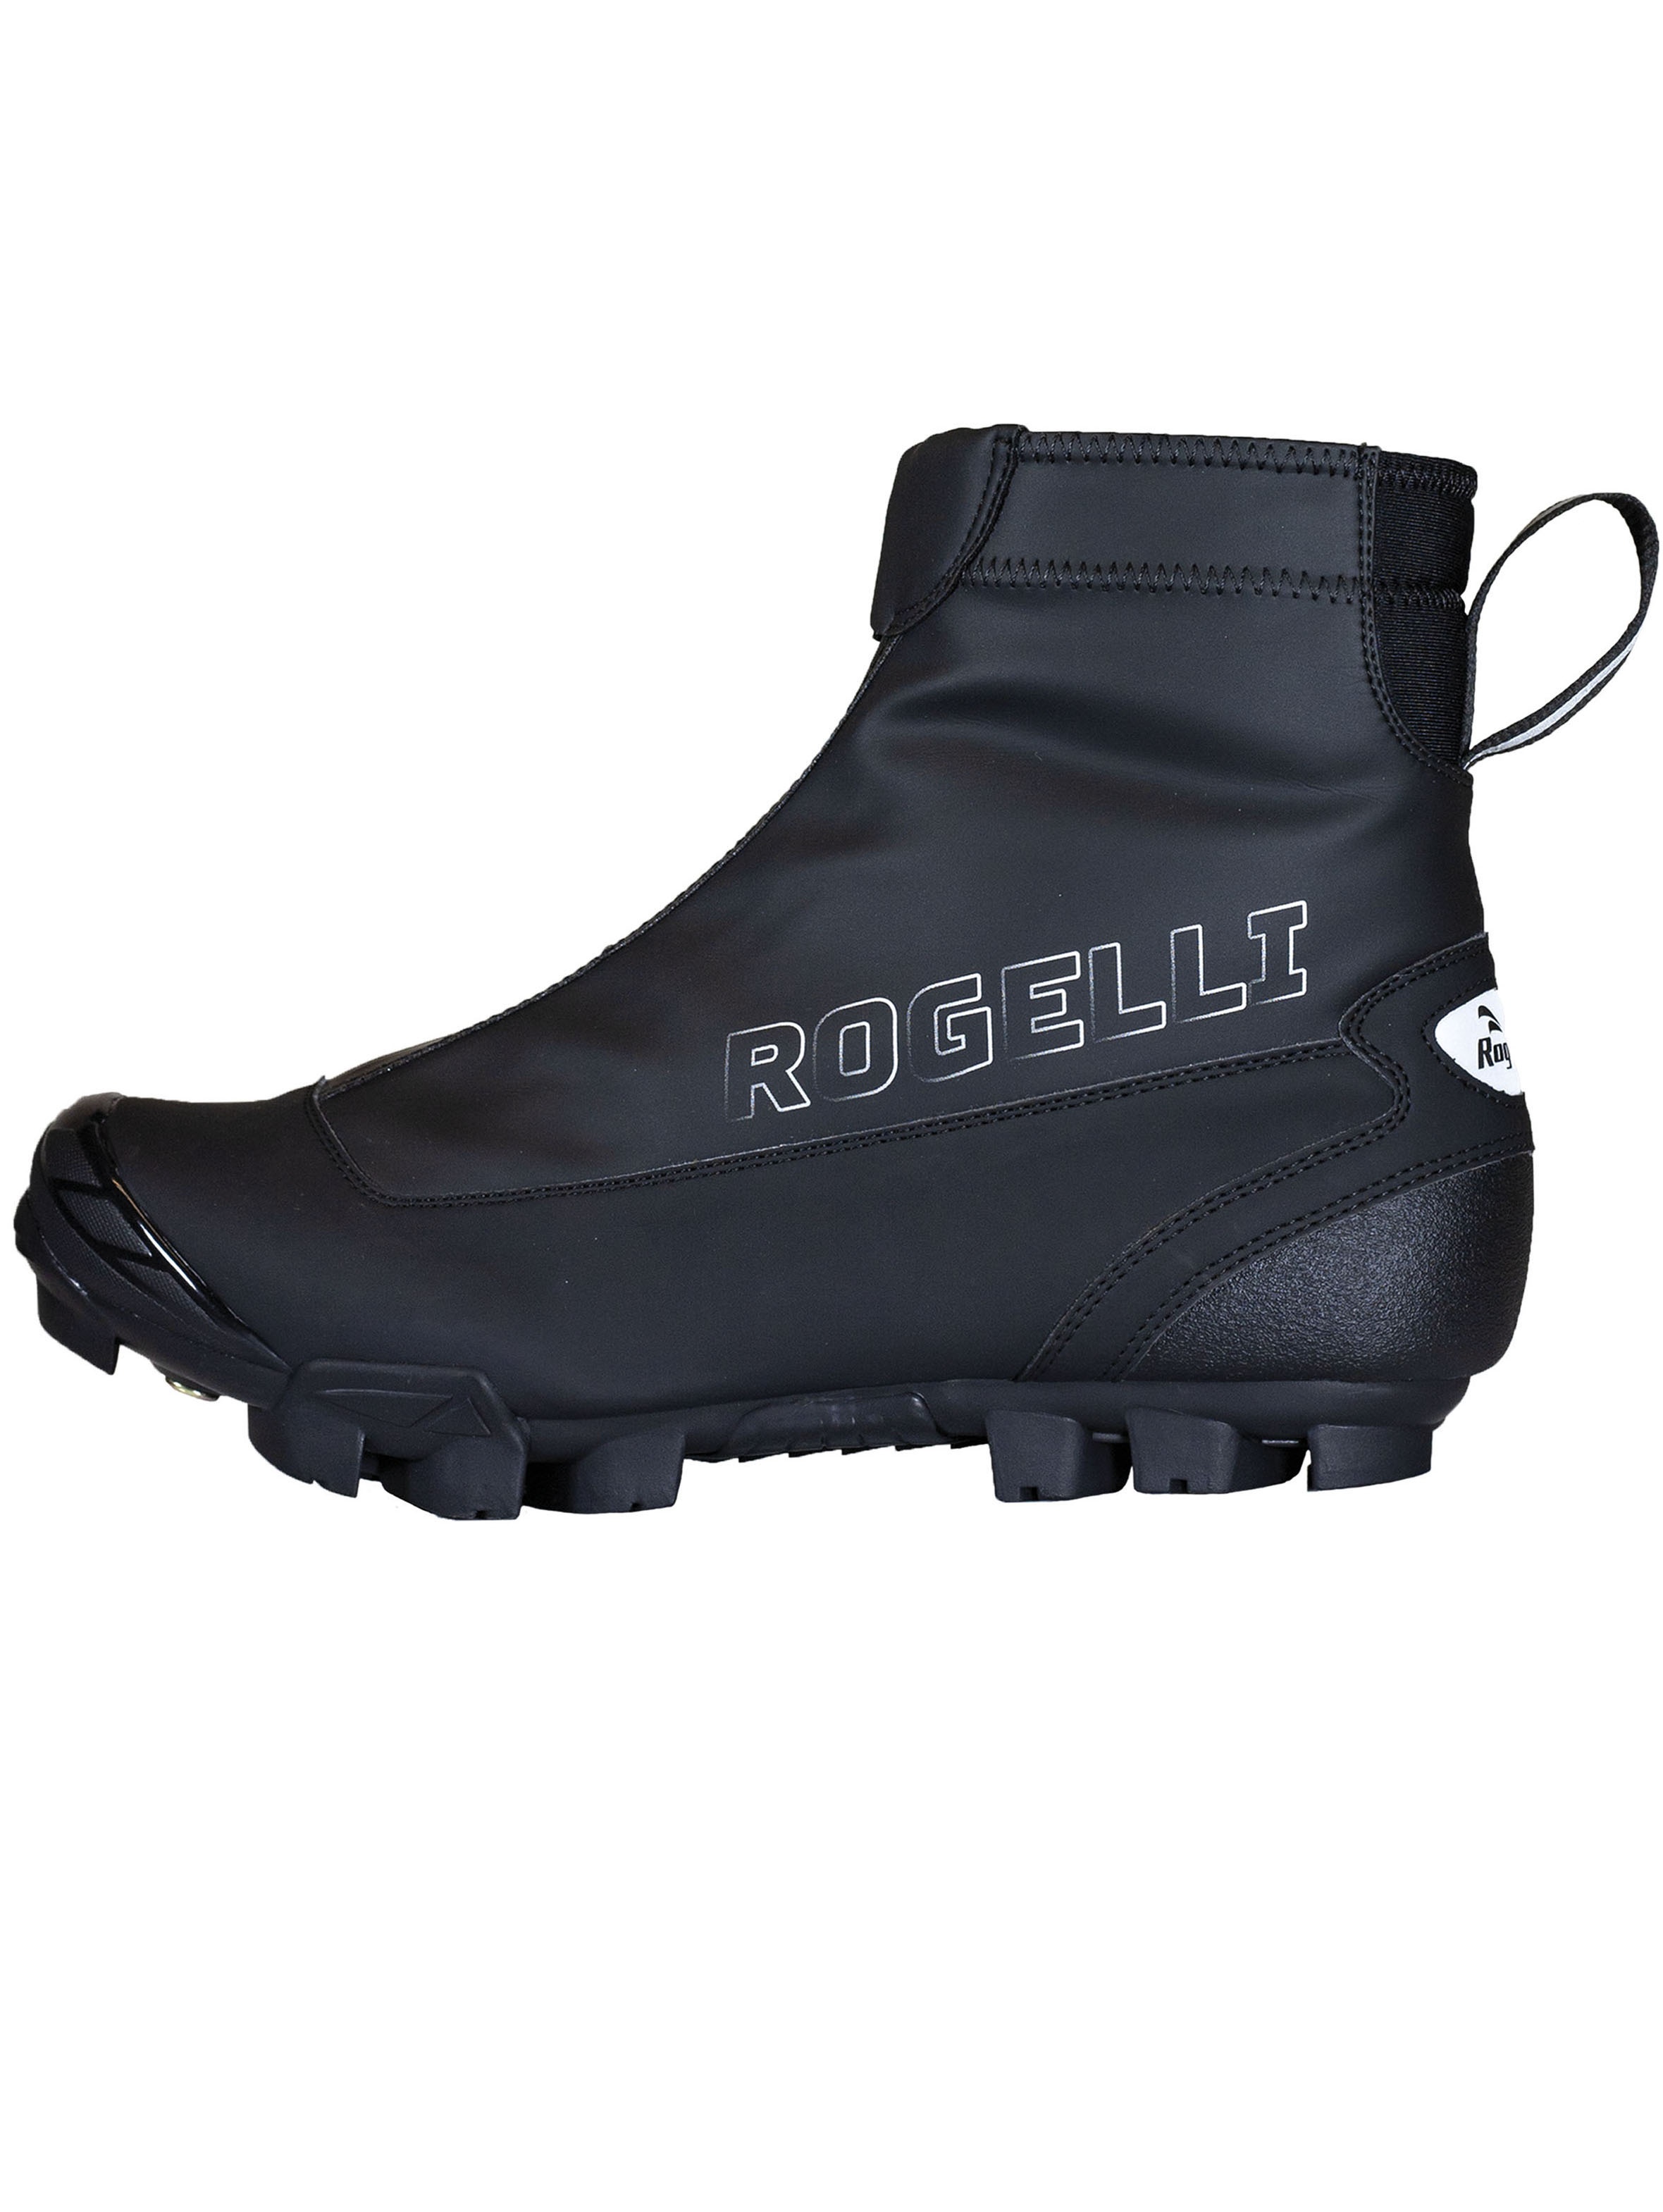 Rogelli artic zimowe buty rowerowe mtb, czarne - Rozmiar: 44